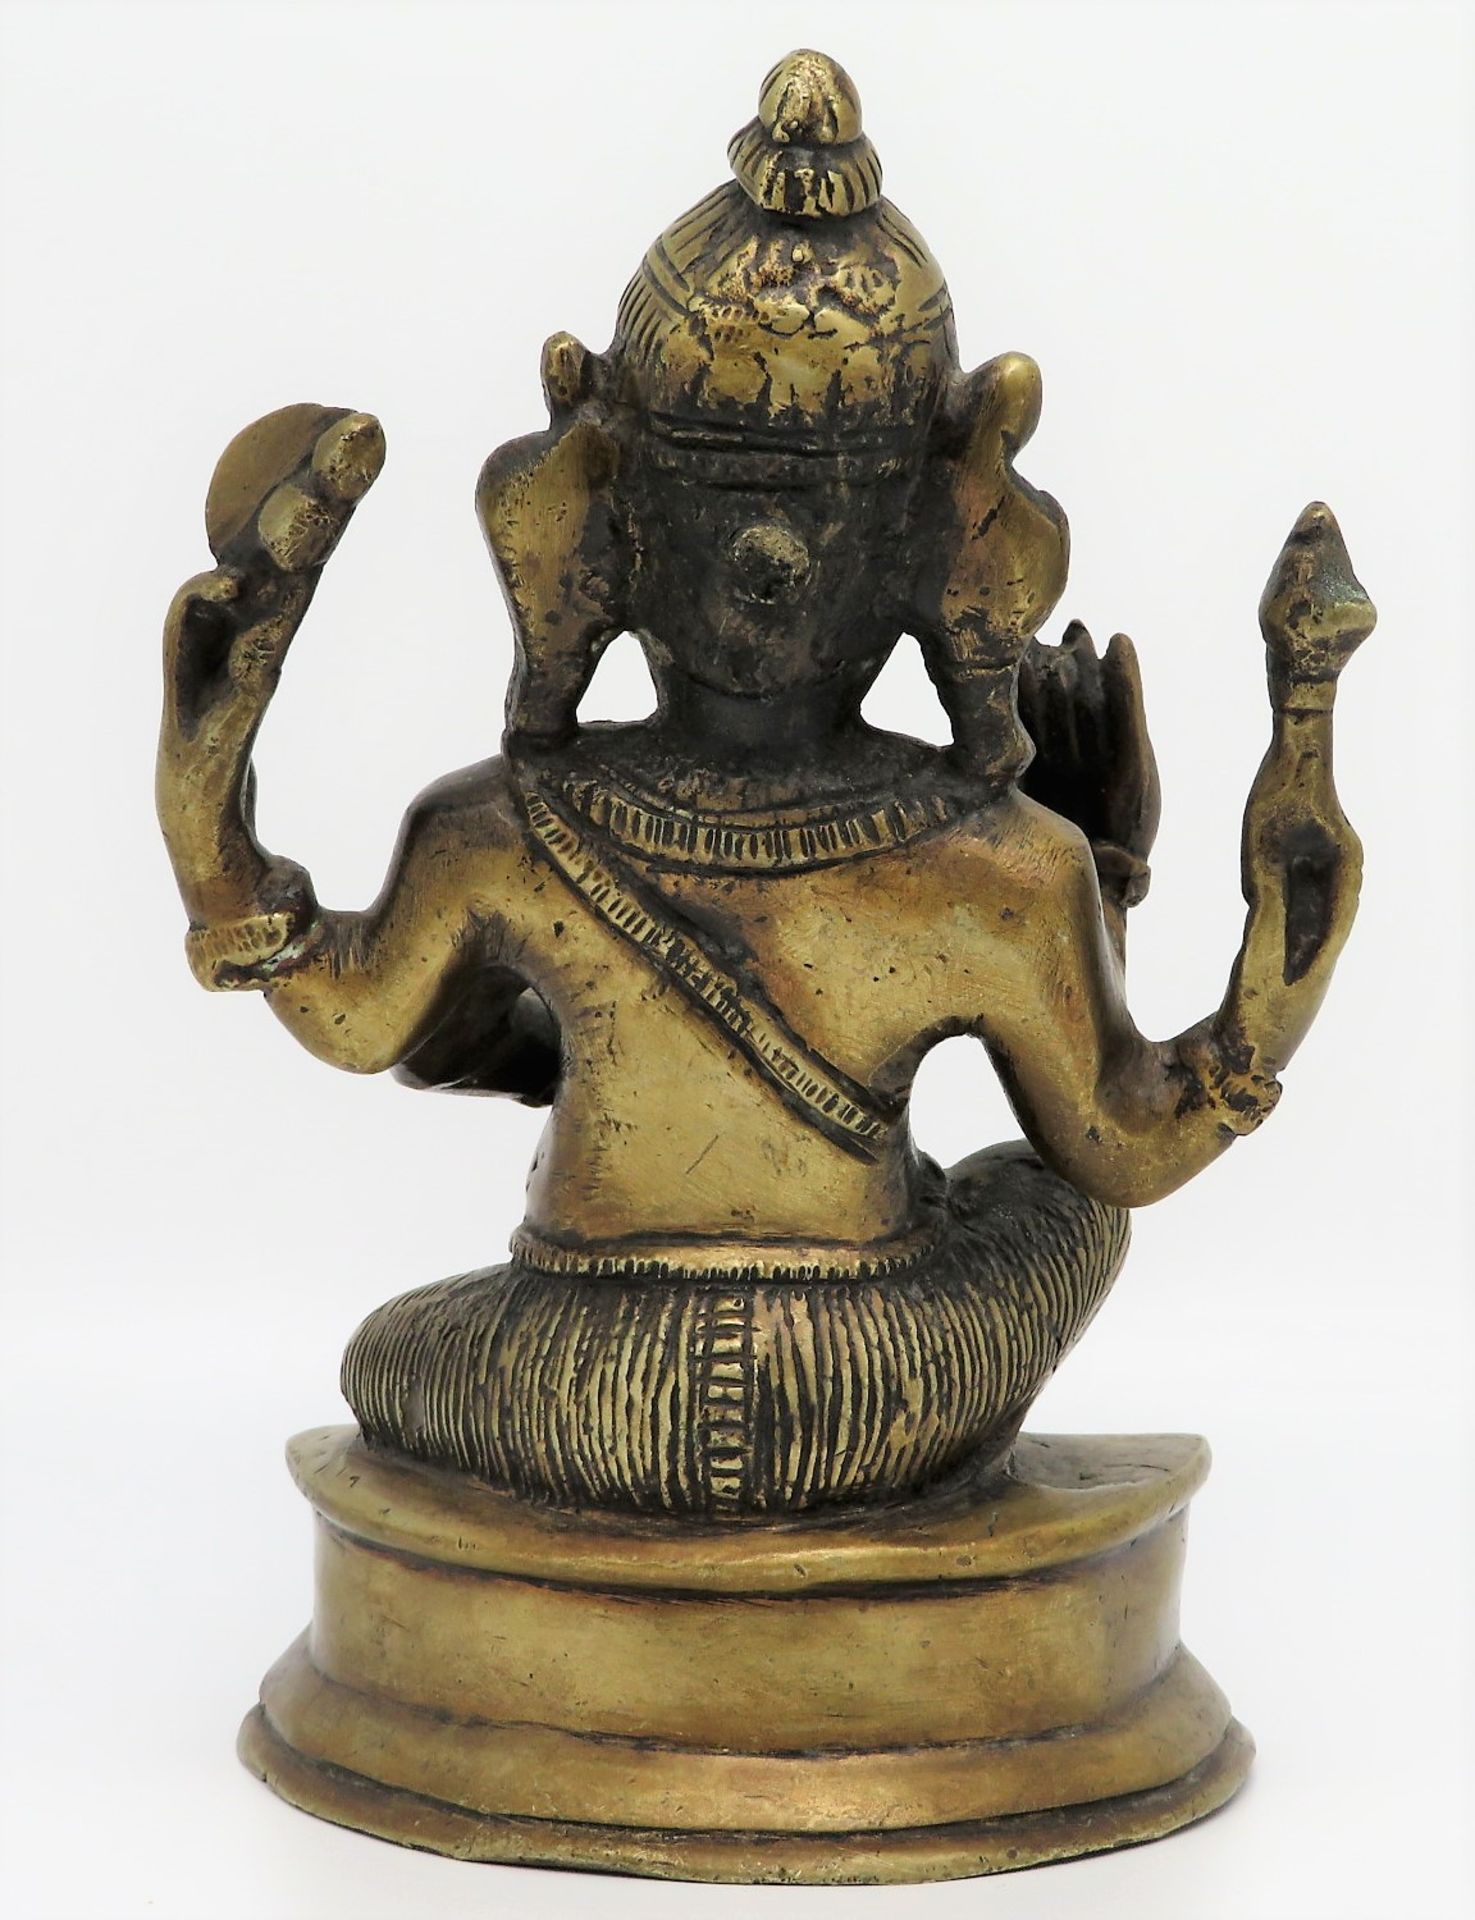 Elefantengott Ganesha, Indien, Bronze, alt, 17 x 12 x 8 cm. - Image 2 of 3